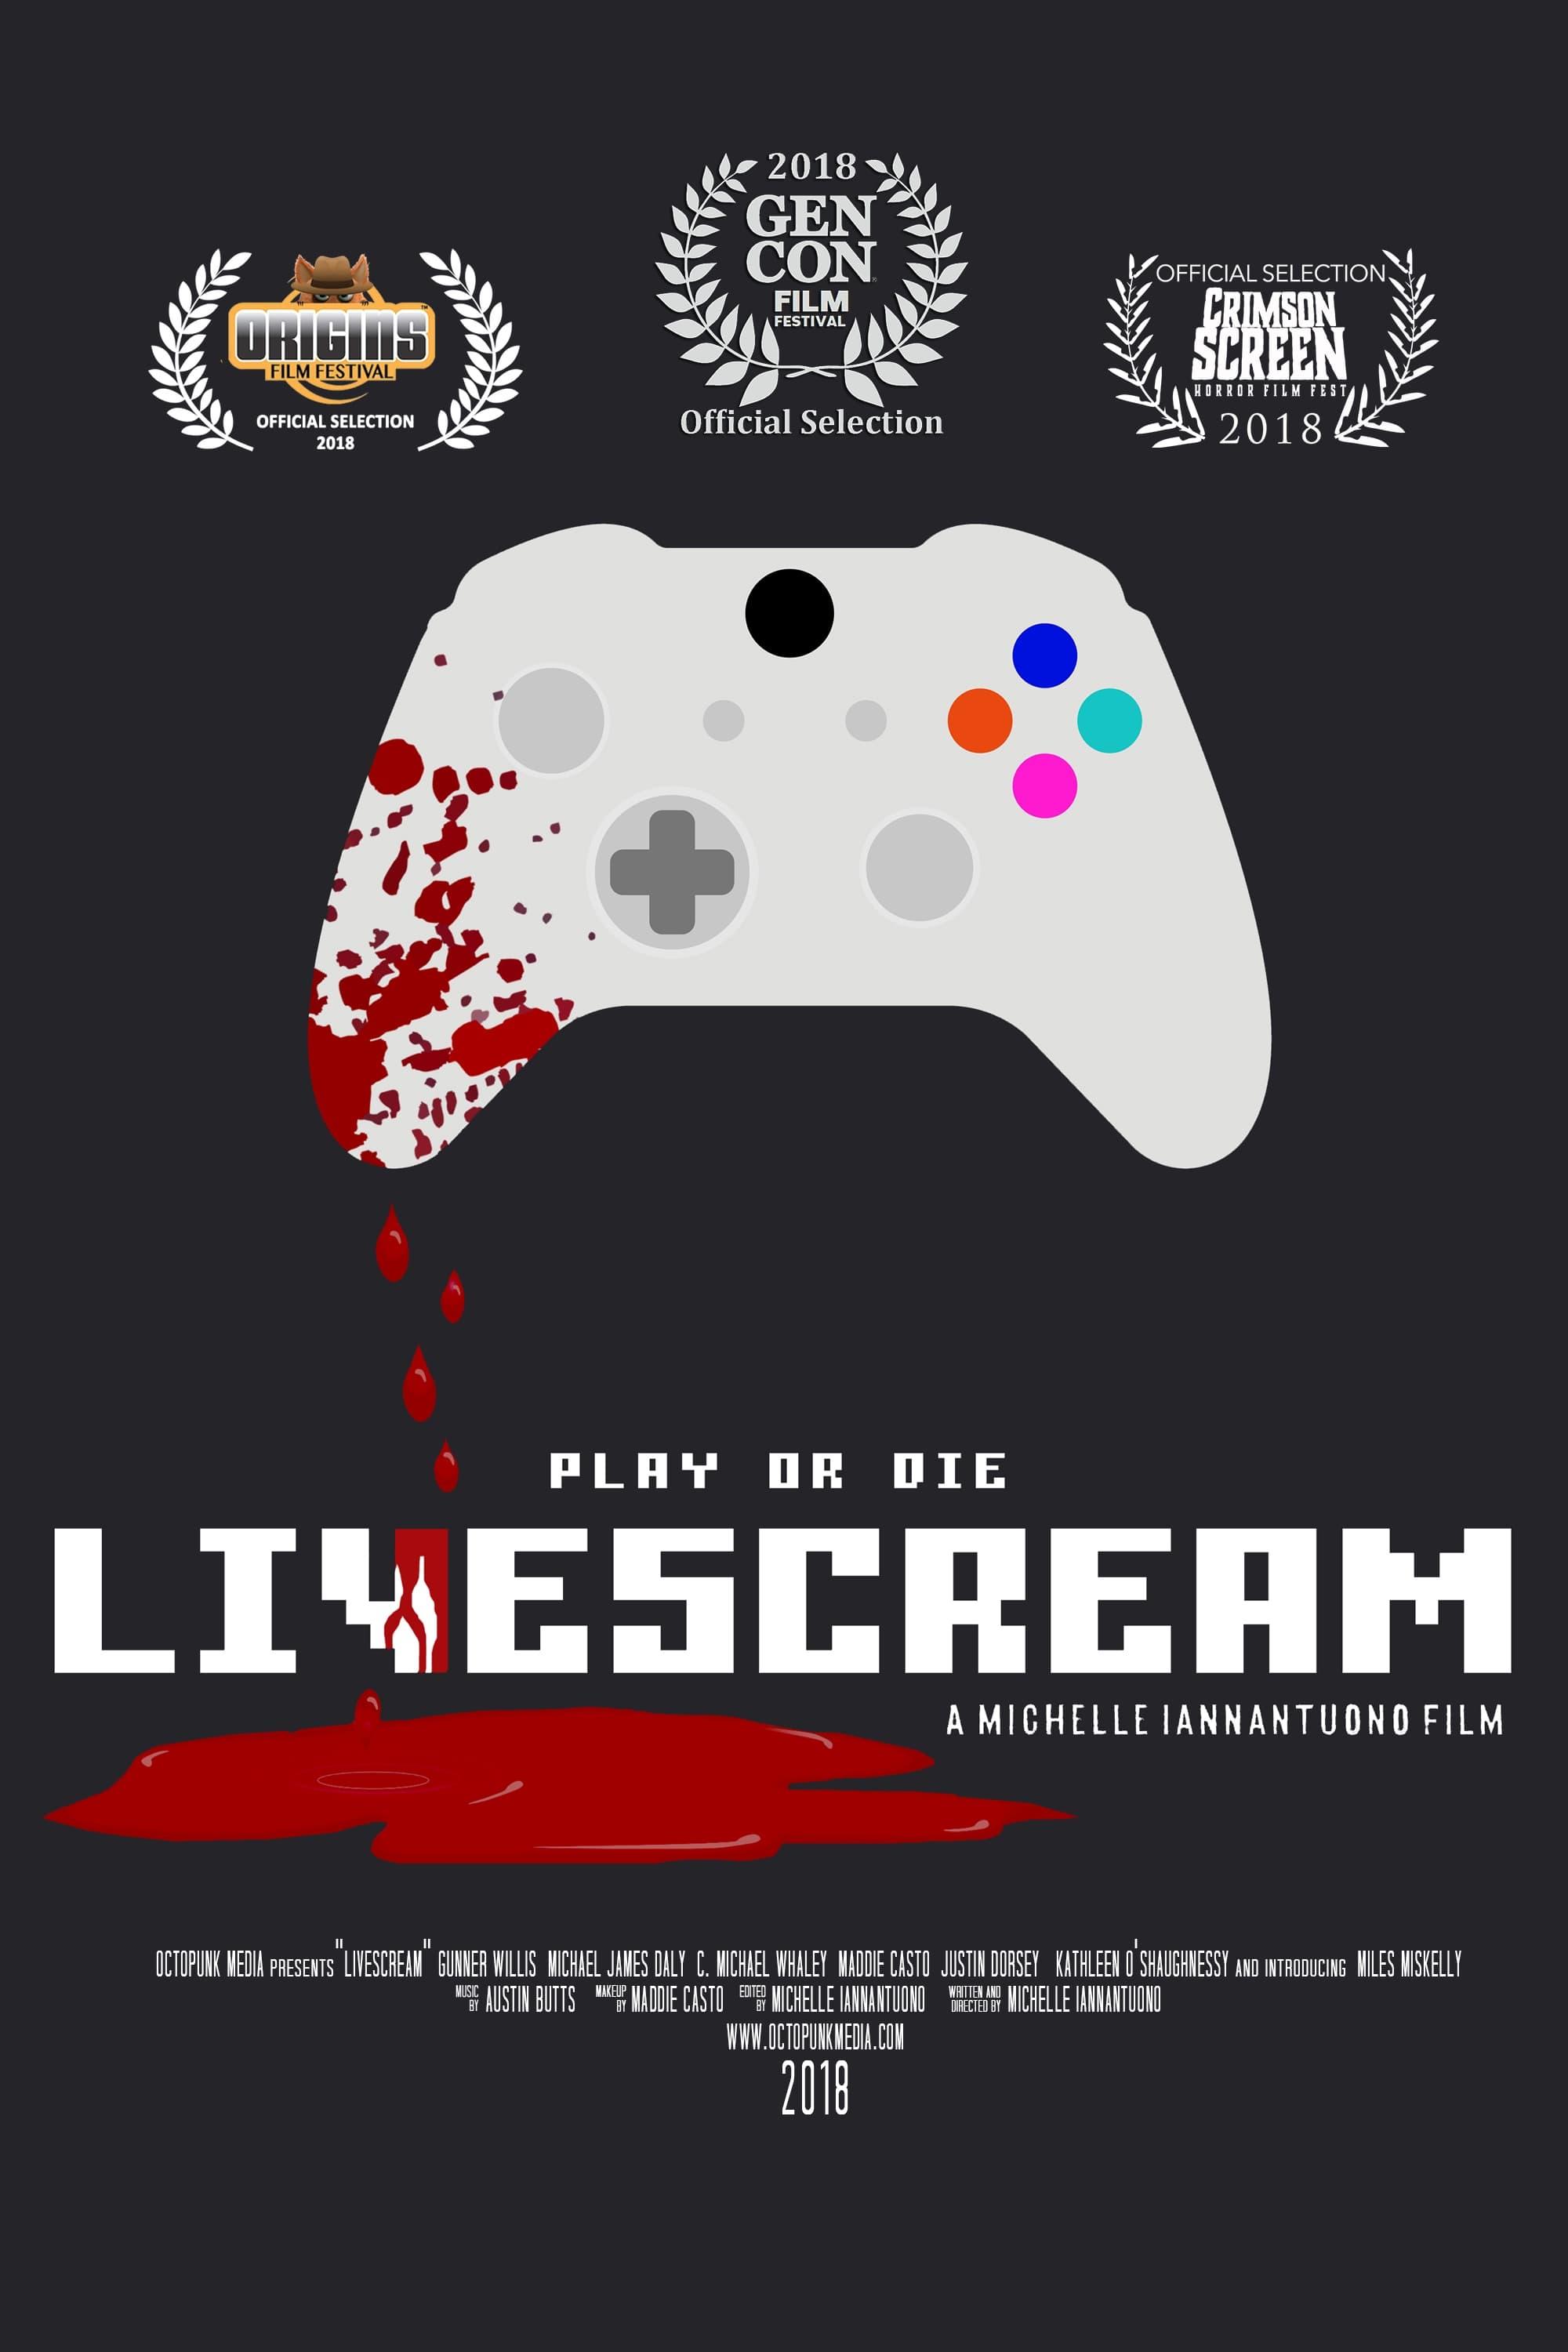 Livescream poster